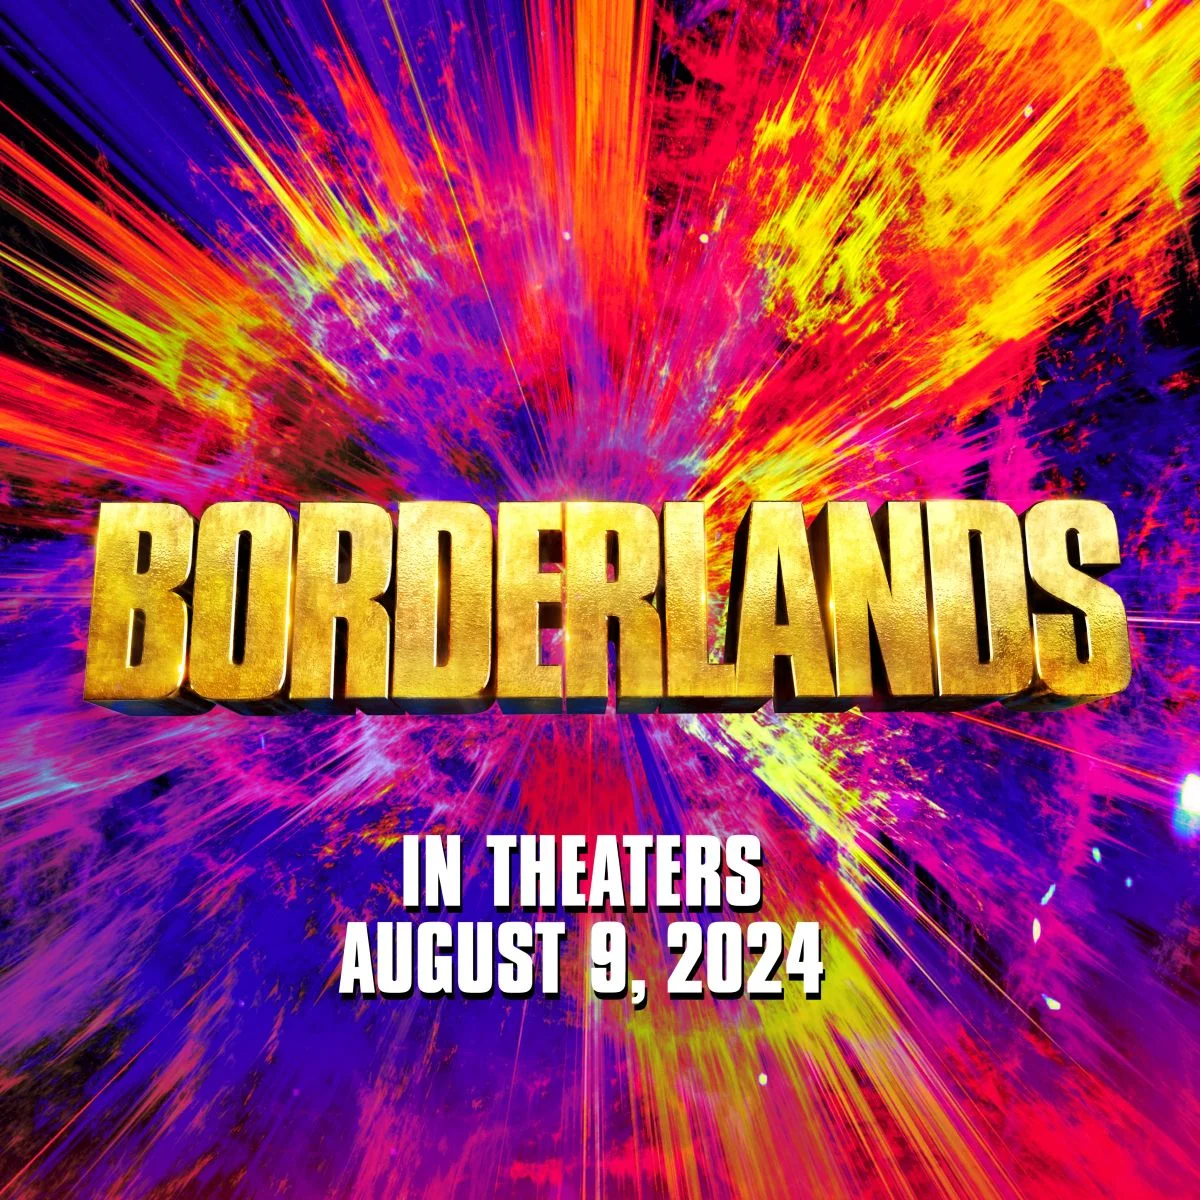 Премьера экранизации Borderlands состоится 9 августа 2024 года